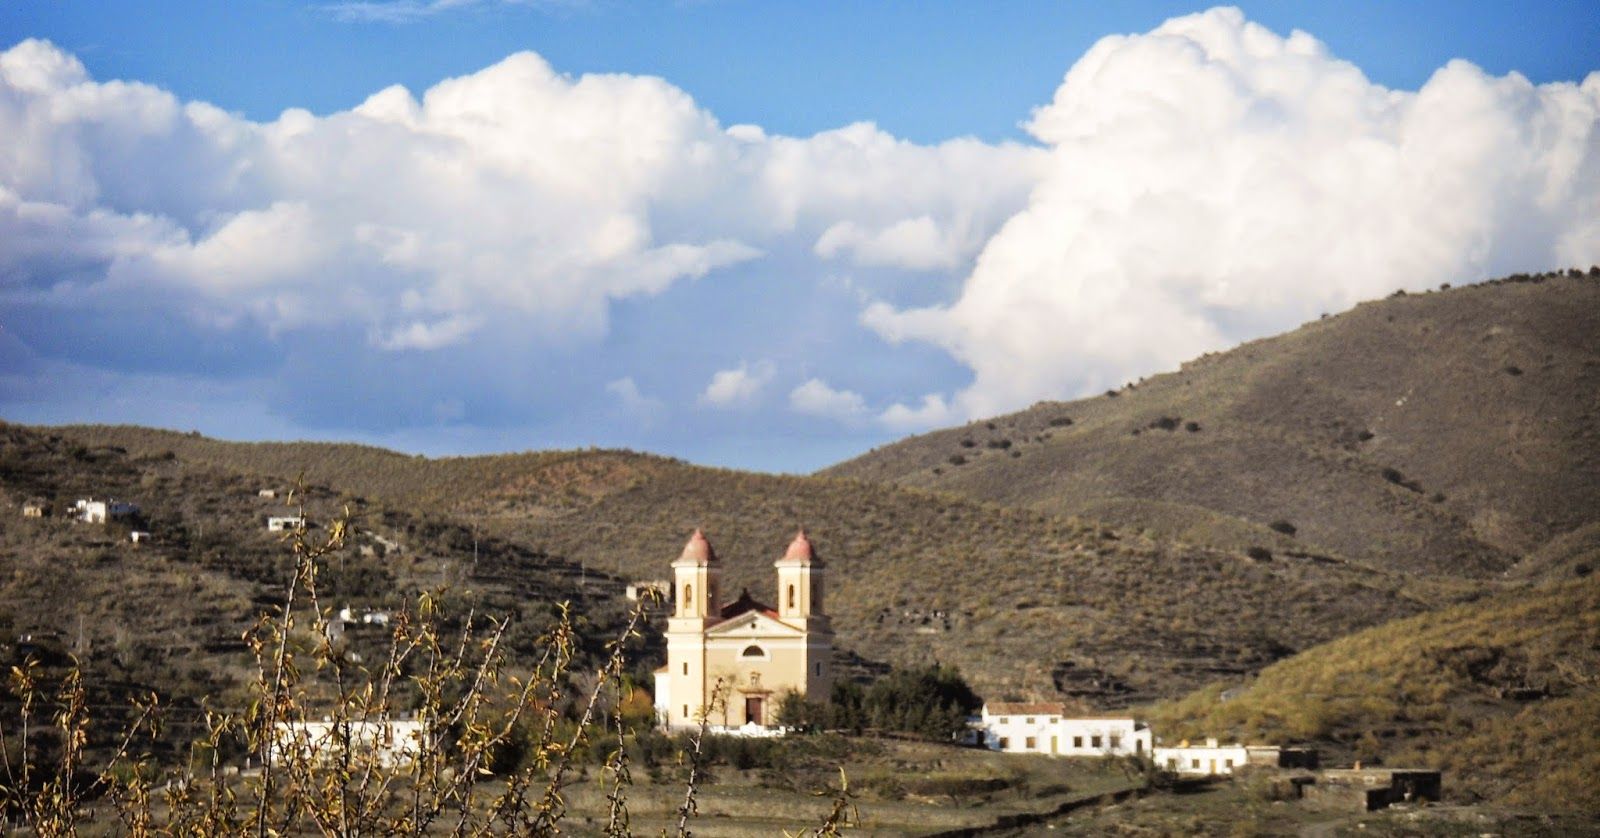 El Santuario de Tices, incluido como patrimonio protegido BIC por la Junta de Andalucía.